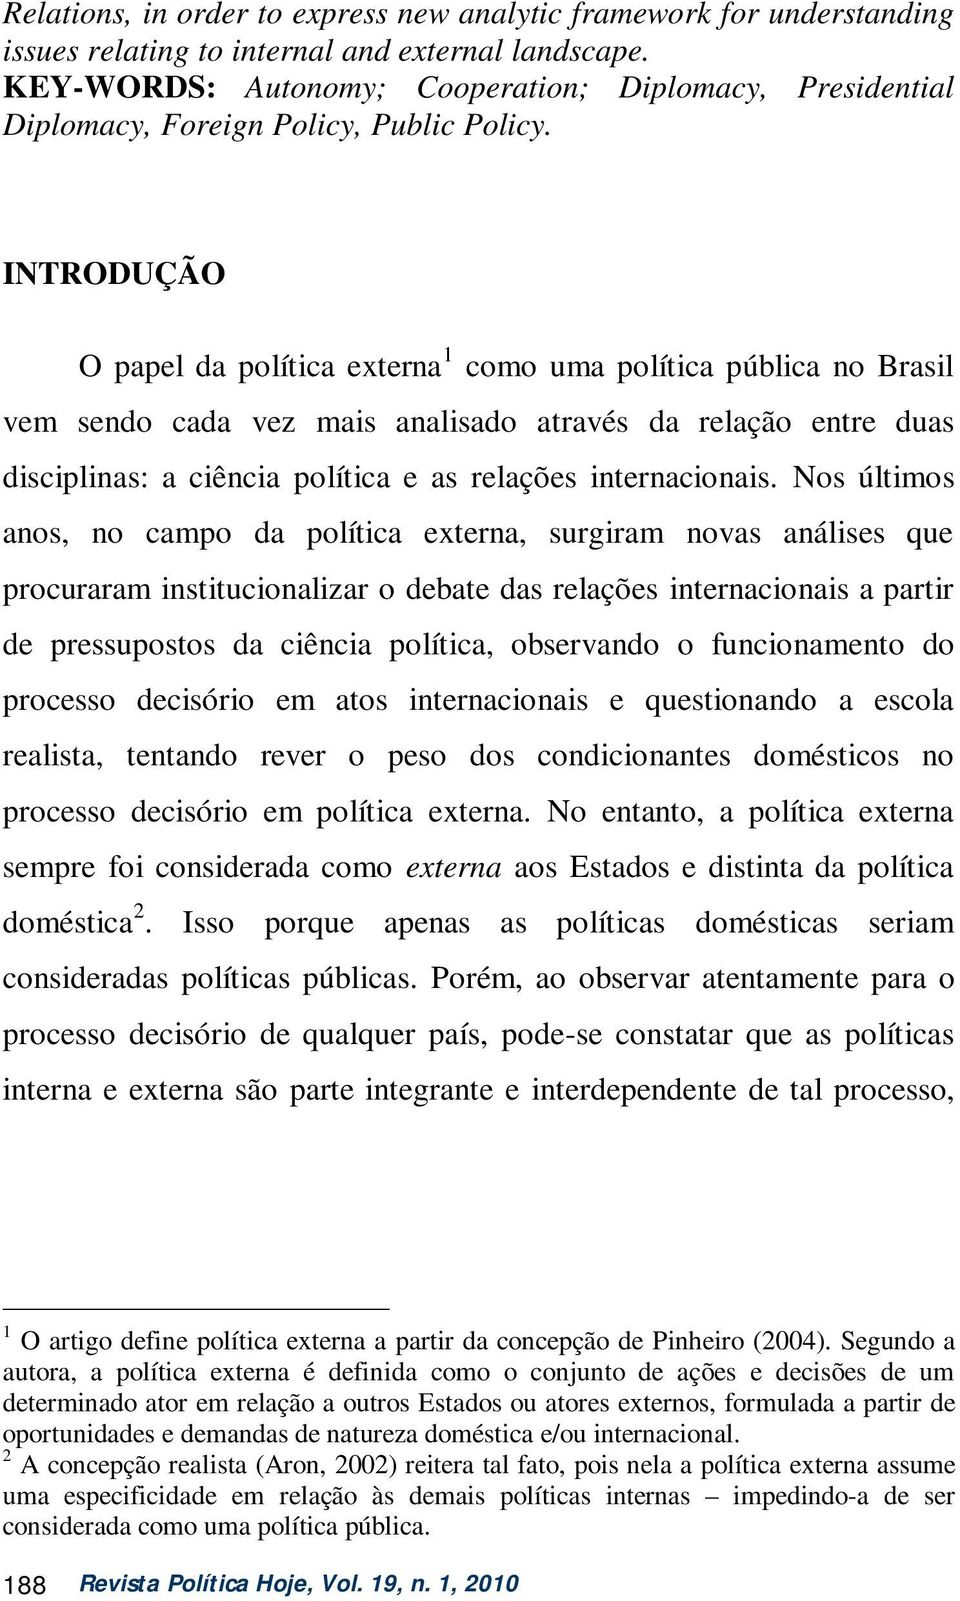 INTRODUÇÃO O papel da política externa 1 como uma política pública no Brasil vem sendo cada vez mais analisado através da relação entre duas disciplinas: a ciência política e as relações